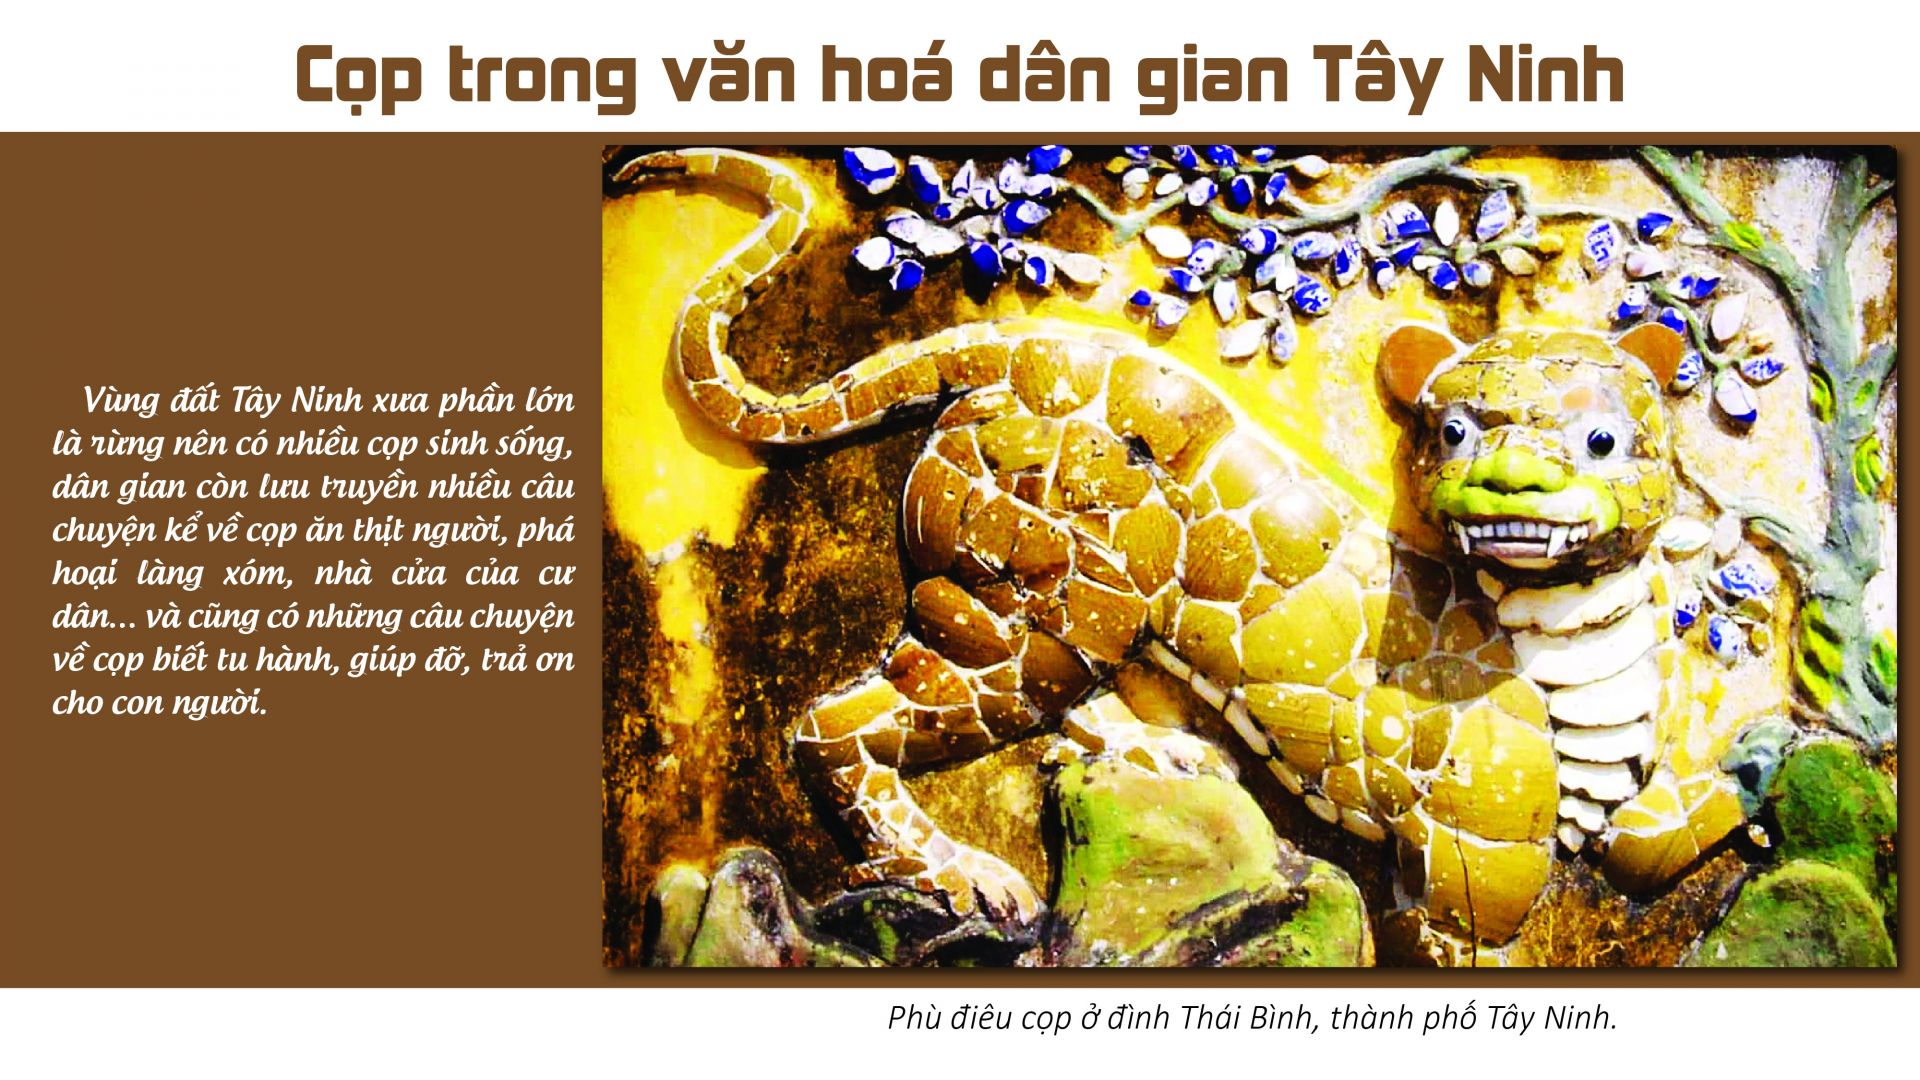 Cọp trong văn hoá dân gian Tây Ninh